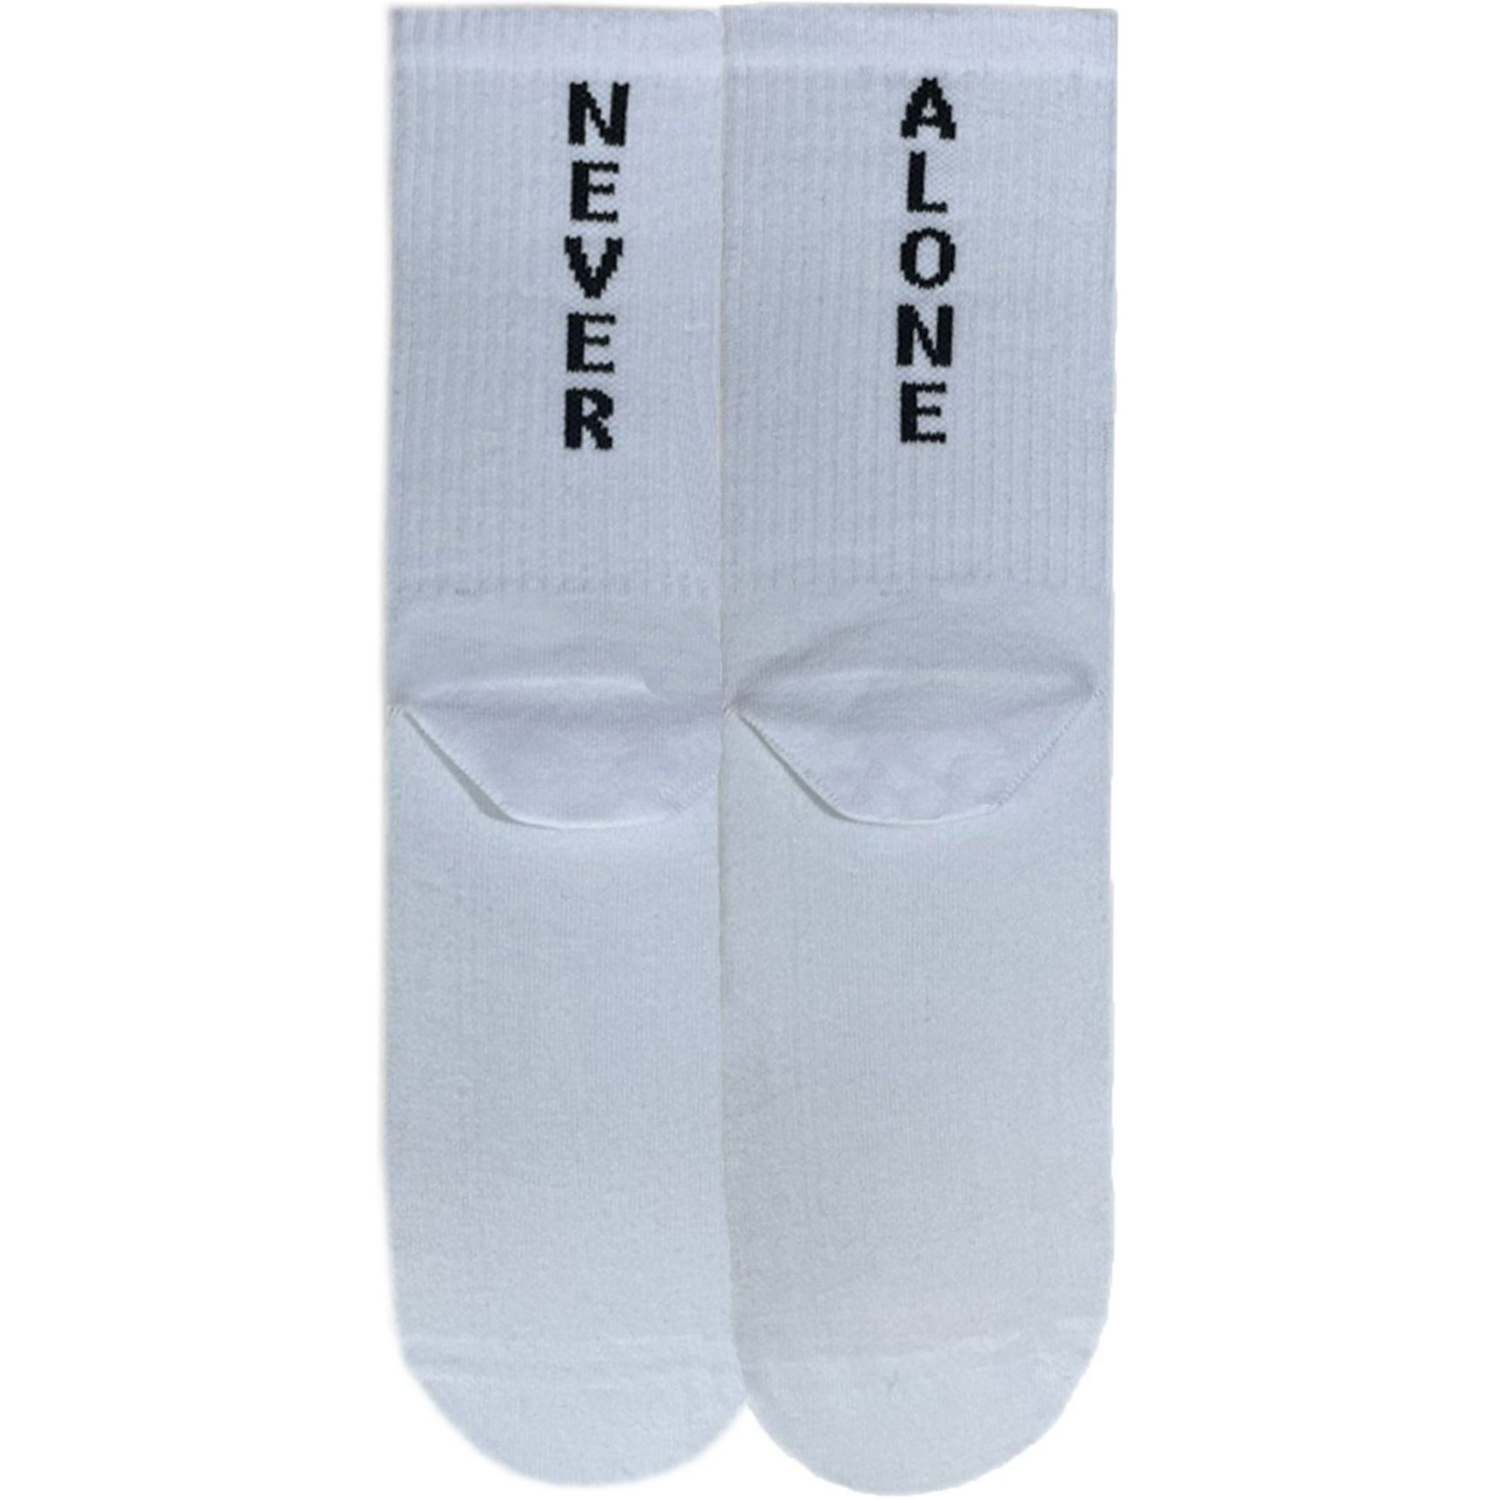 Носки мужские Premier Socks 42-43 1 пара белые с принтом (4820163317922) фото 